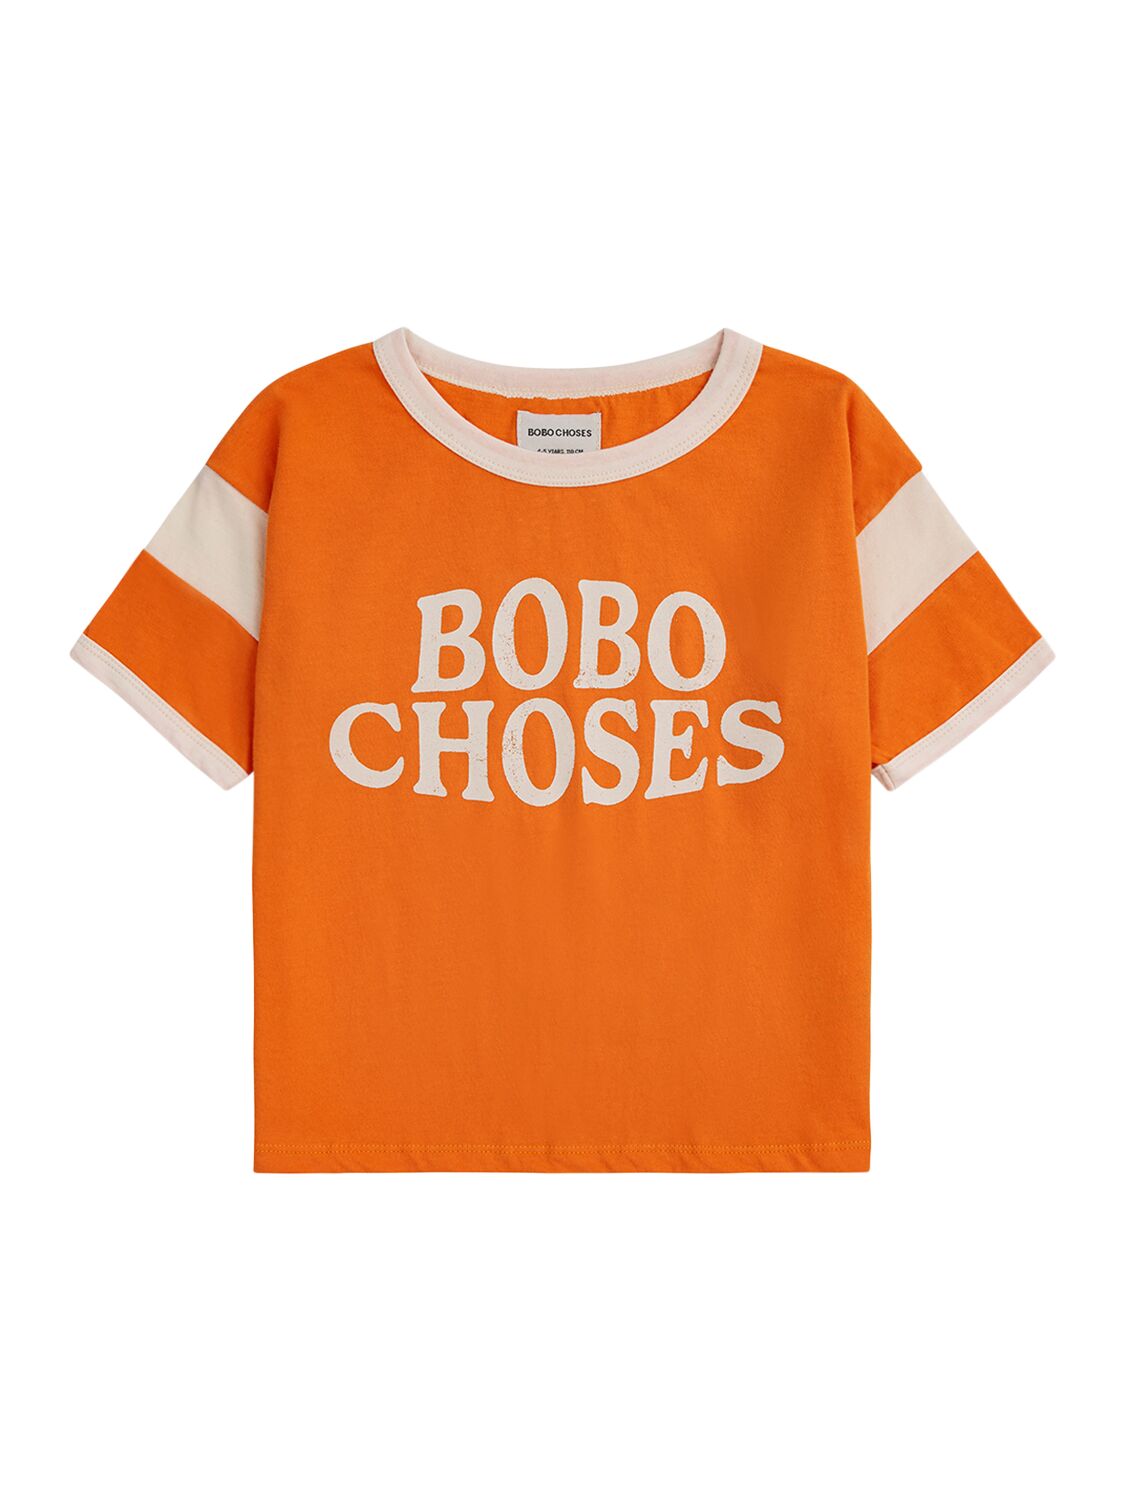 Bobo Choses Kids' Printed Organic Cotton T-shirt In Orange